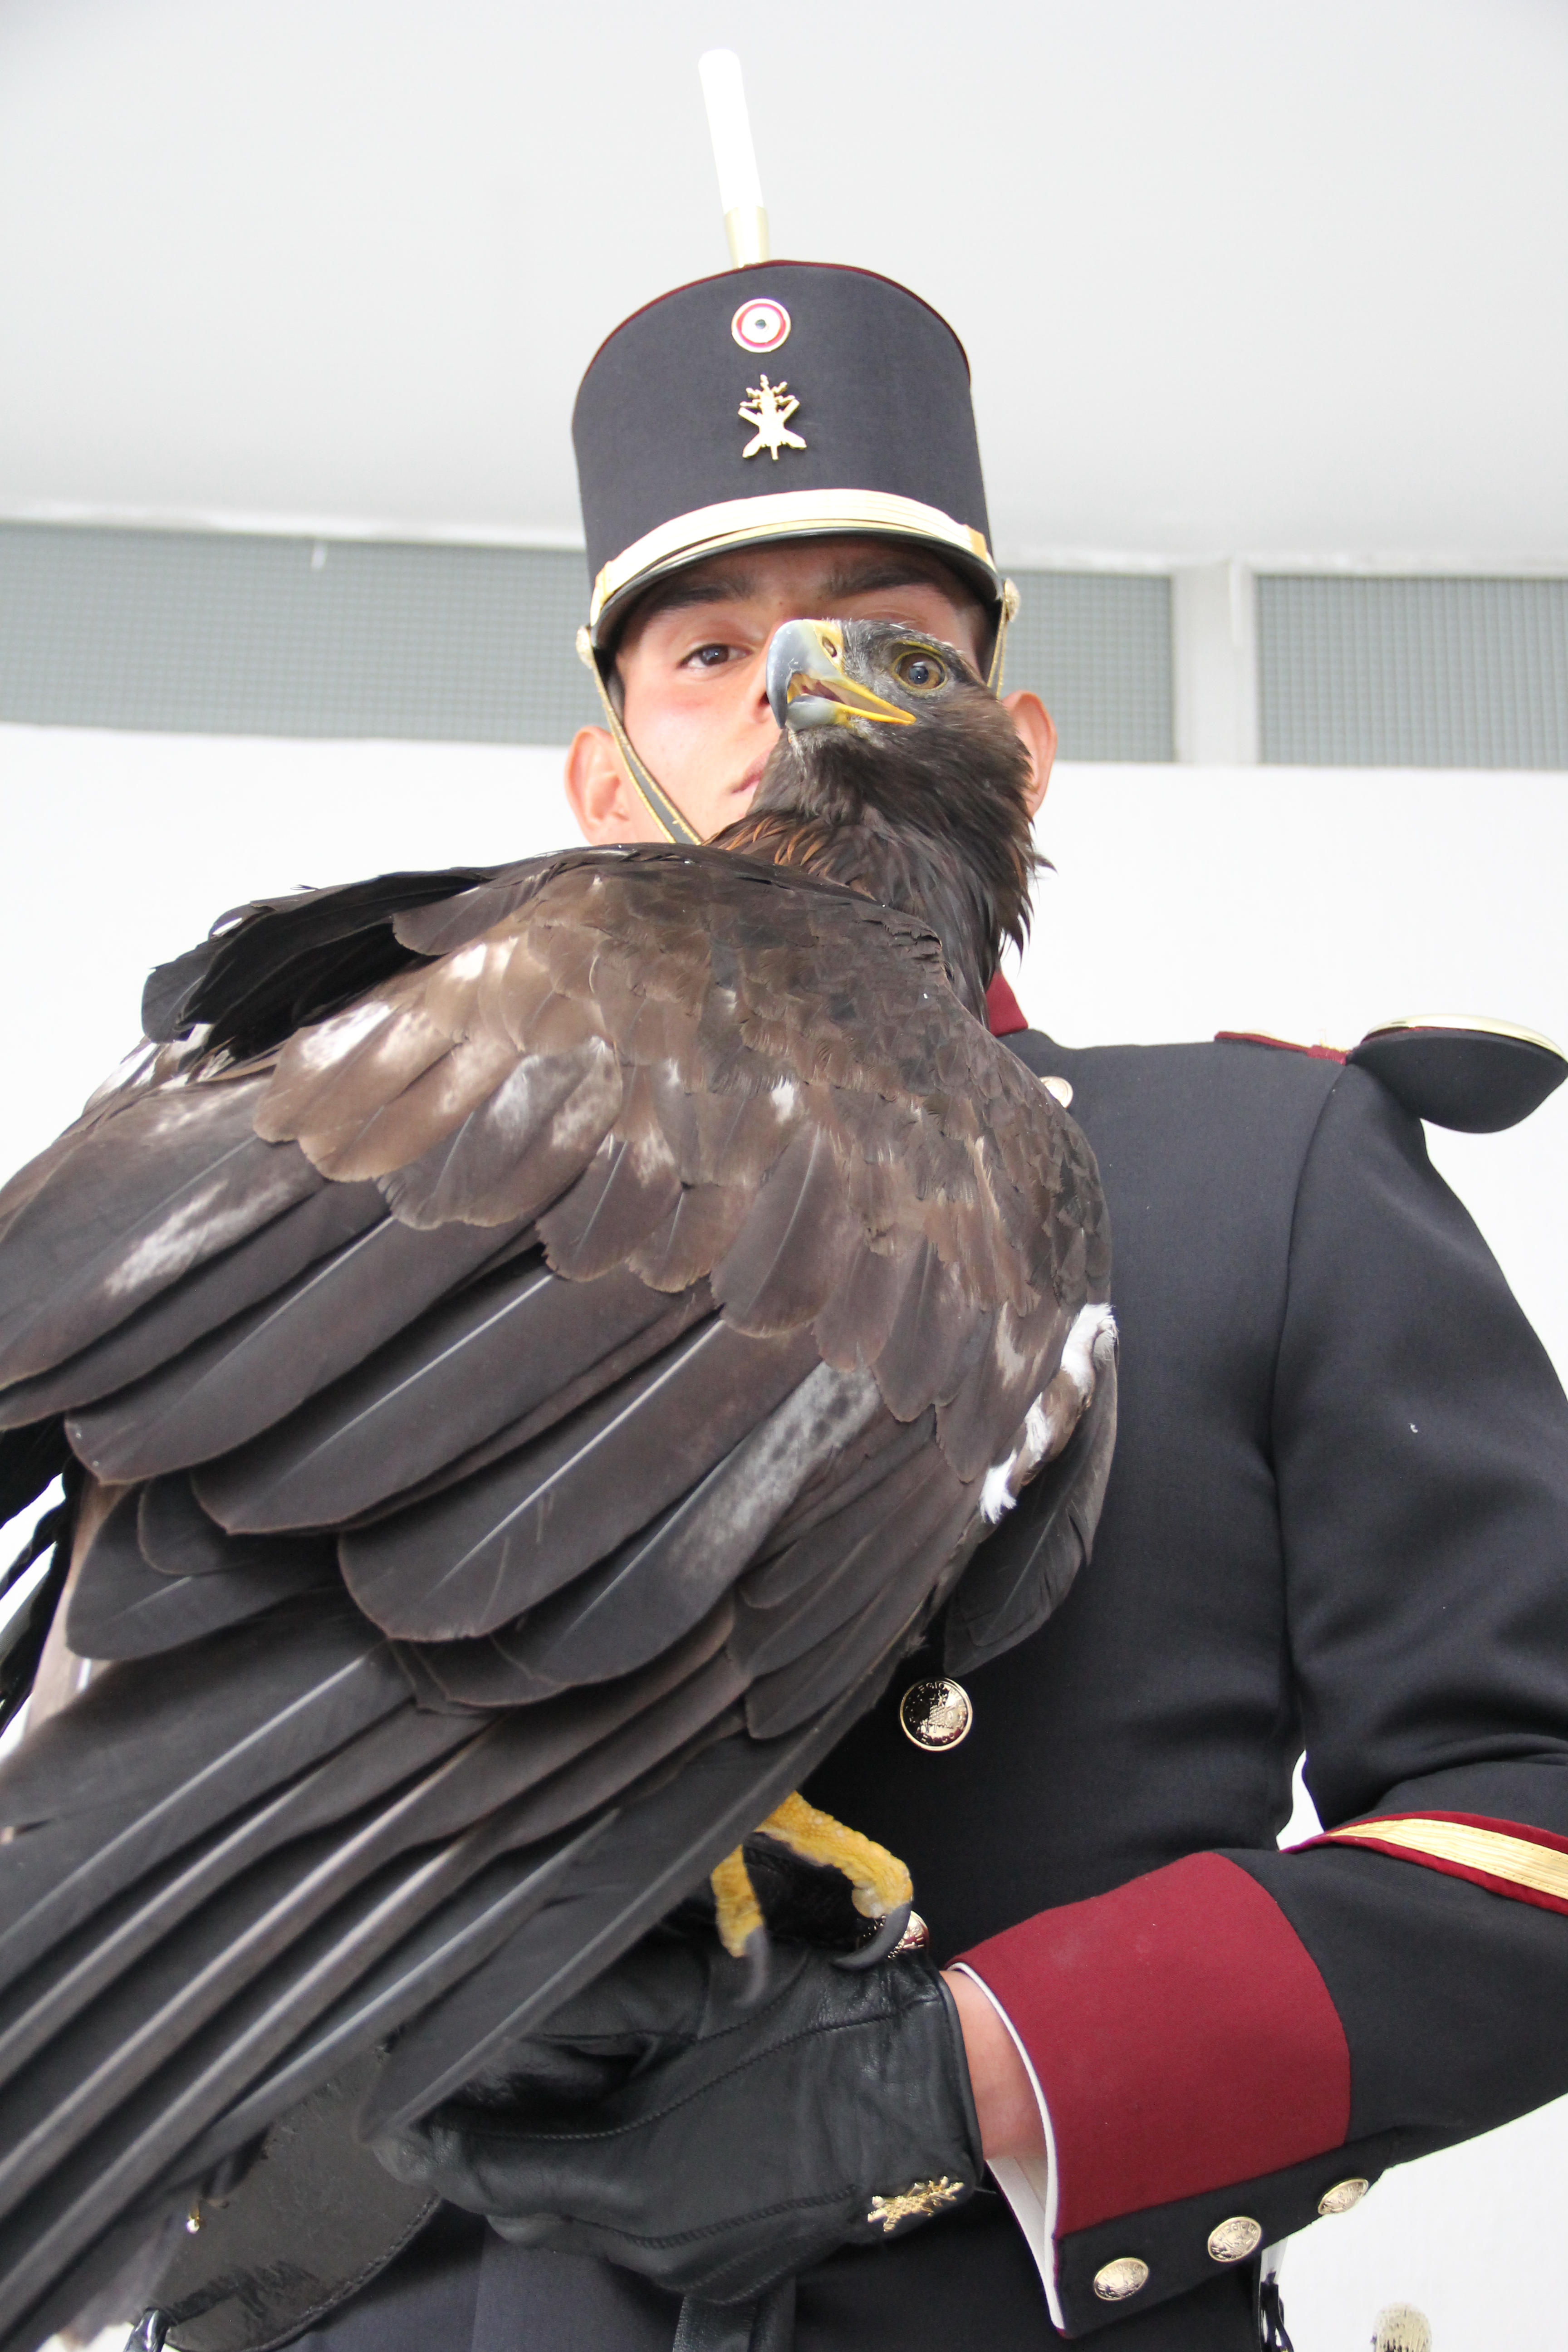 PROFEPA y SEDENA, en la celebración del Día Nacional del Águila Real, firmaron un convenio  que permitirá crear el “Centro Nacional de Control y Protección del Águila Real”, cuyo objetivo es la recepción, rehabilitación y liberación de ejemplares.